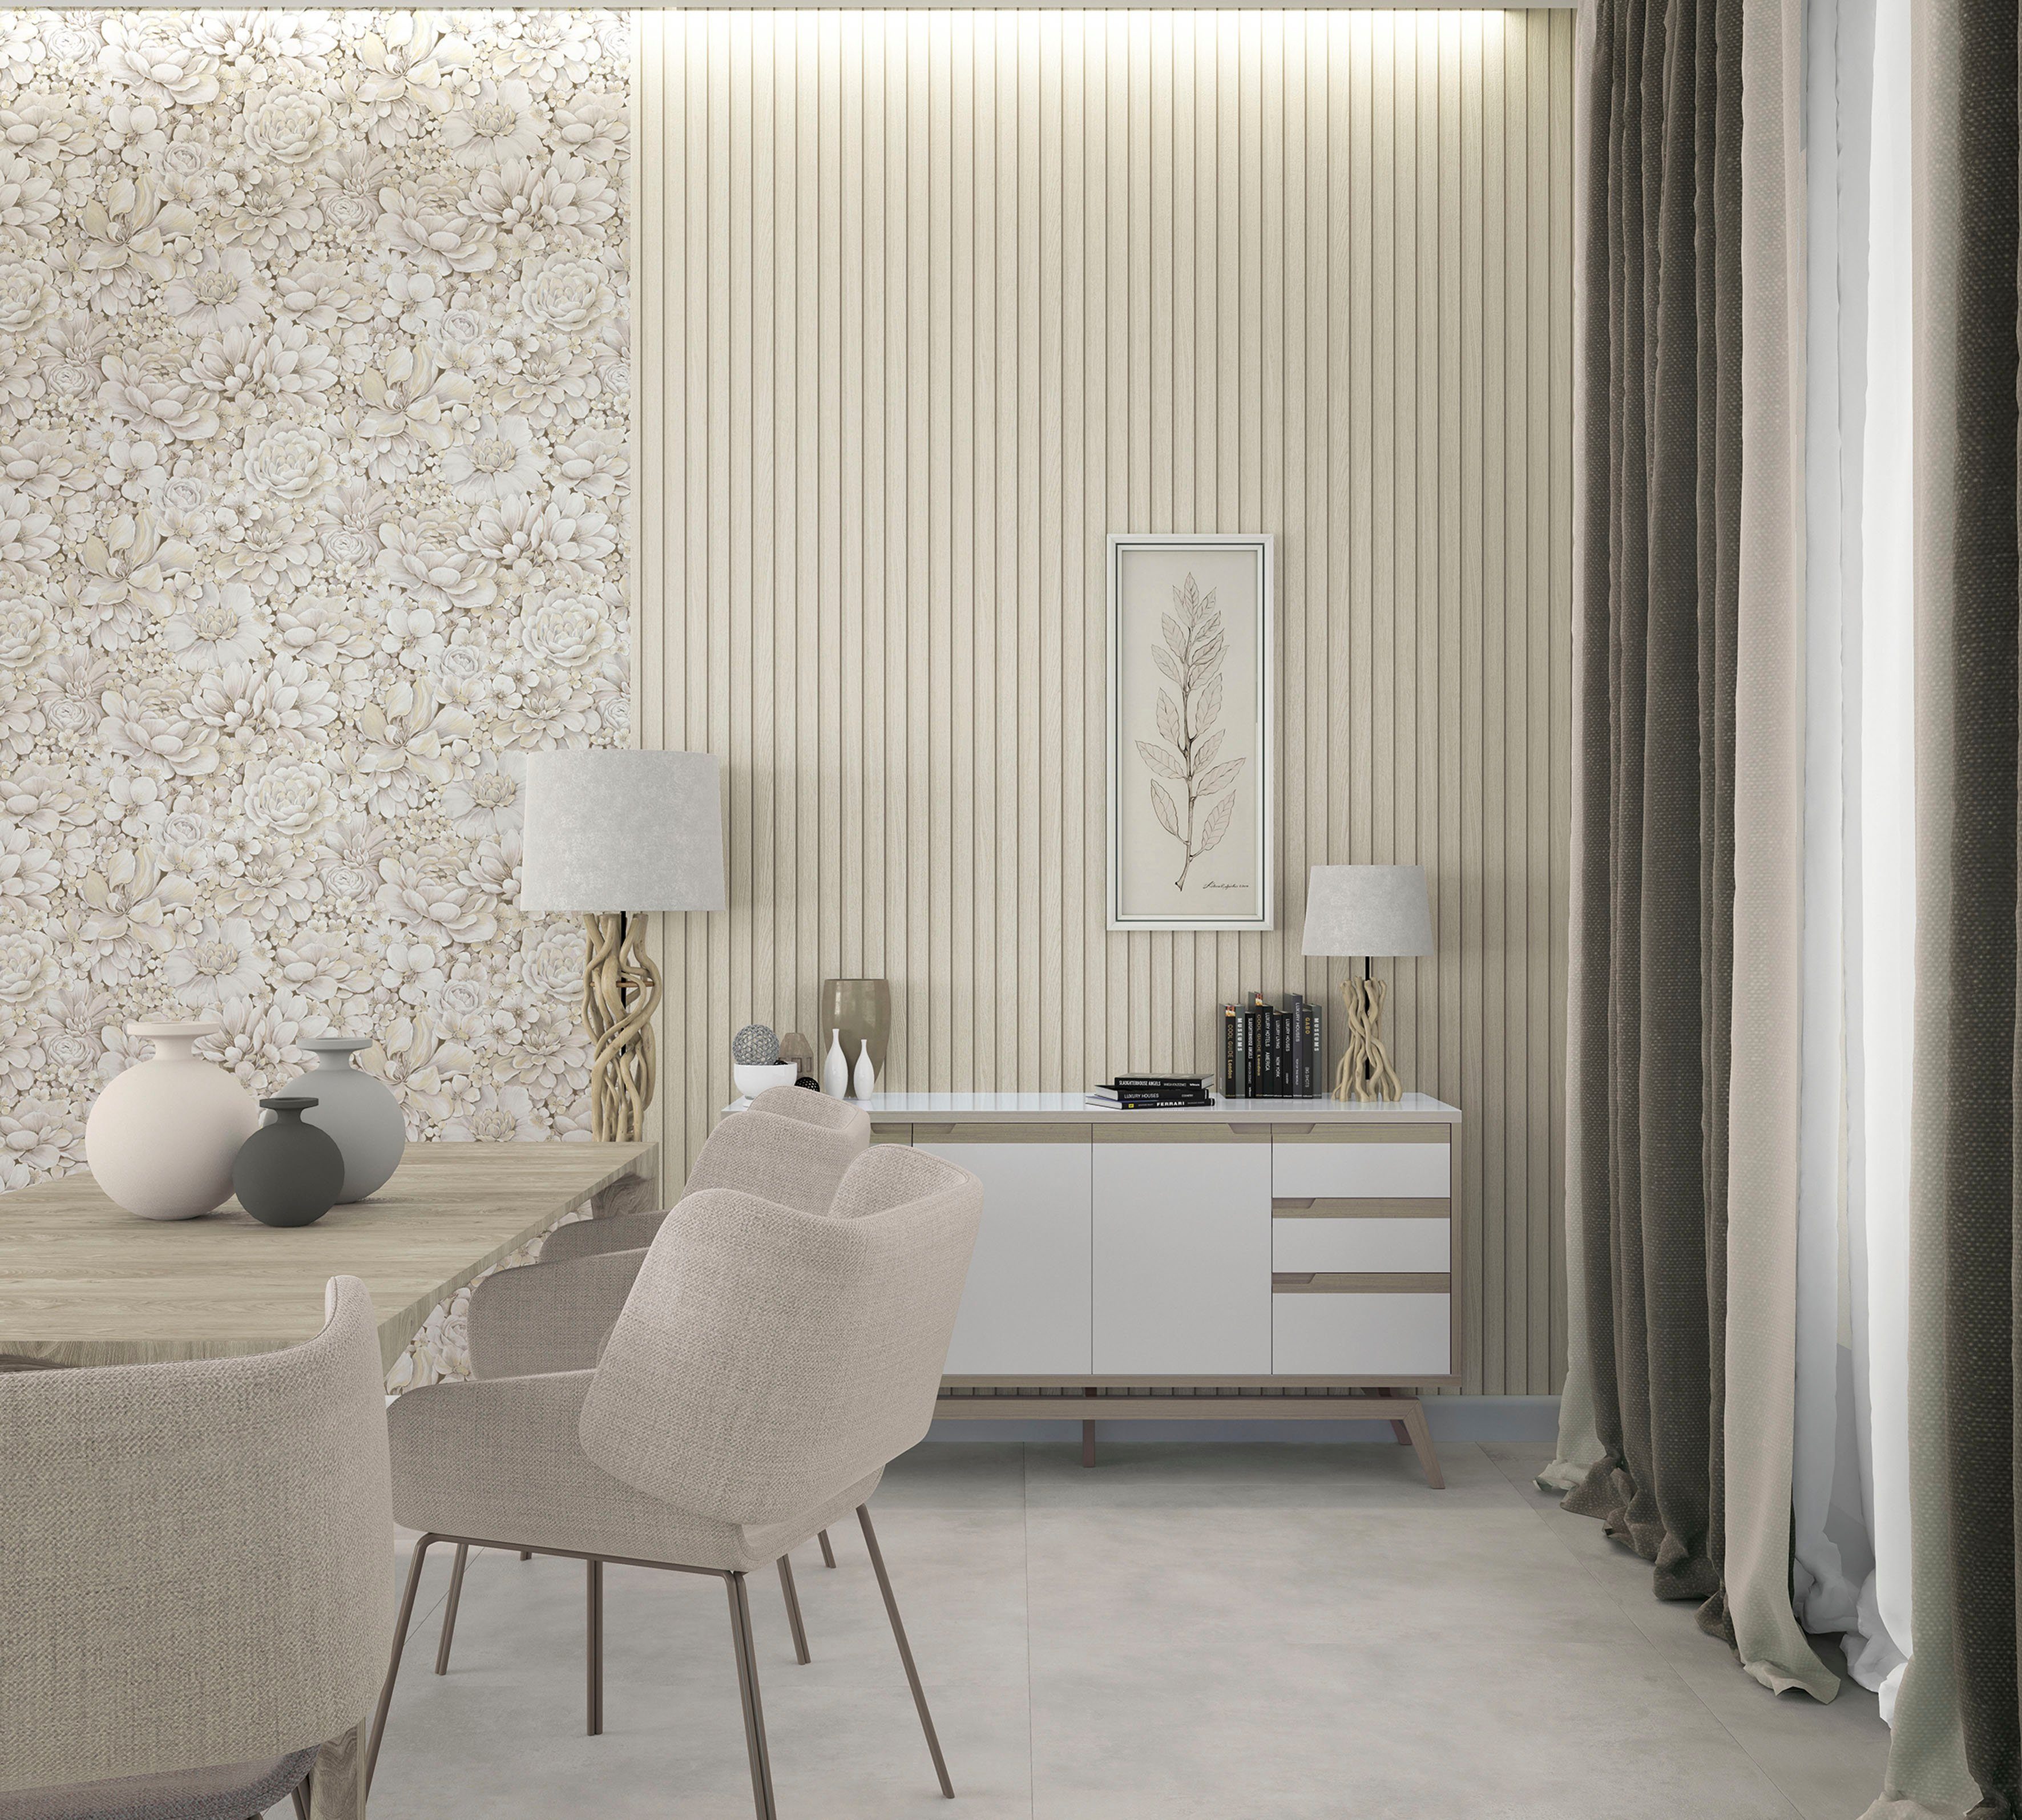 Blattmotiv moderne Marburg Schlafzimmer geprägt, für Vliestapete Vliestapete creme Wohnzimmer matt, Flower, Küche